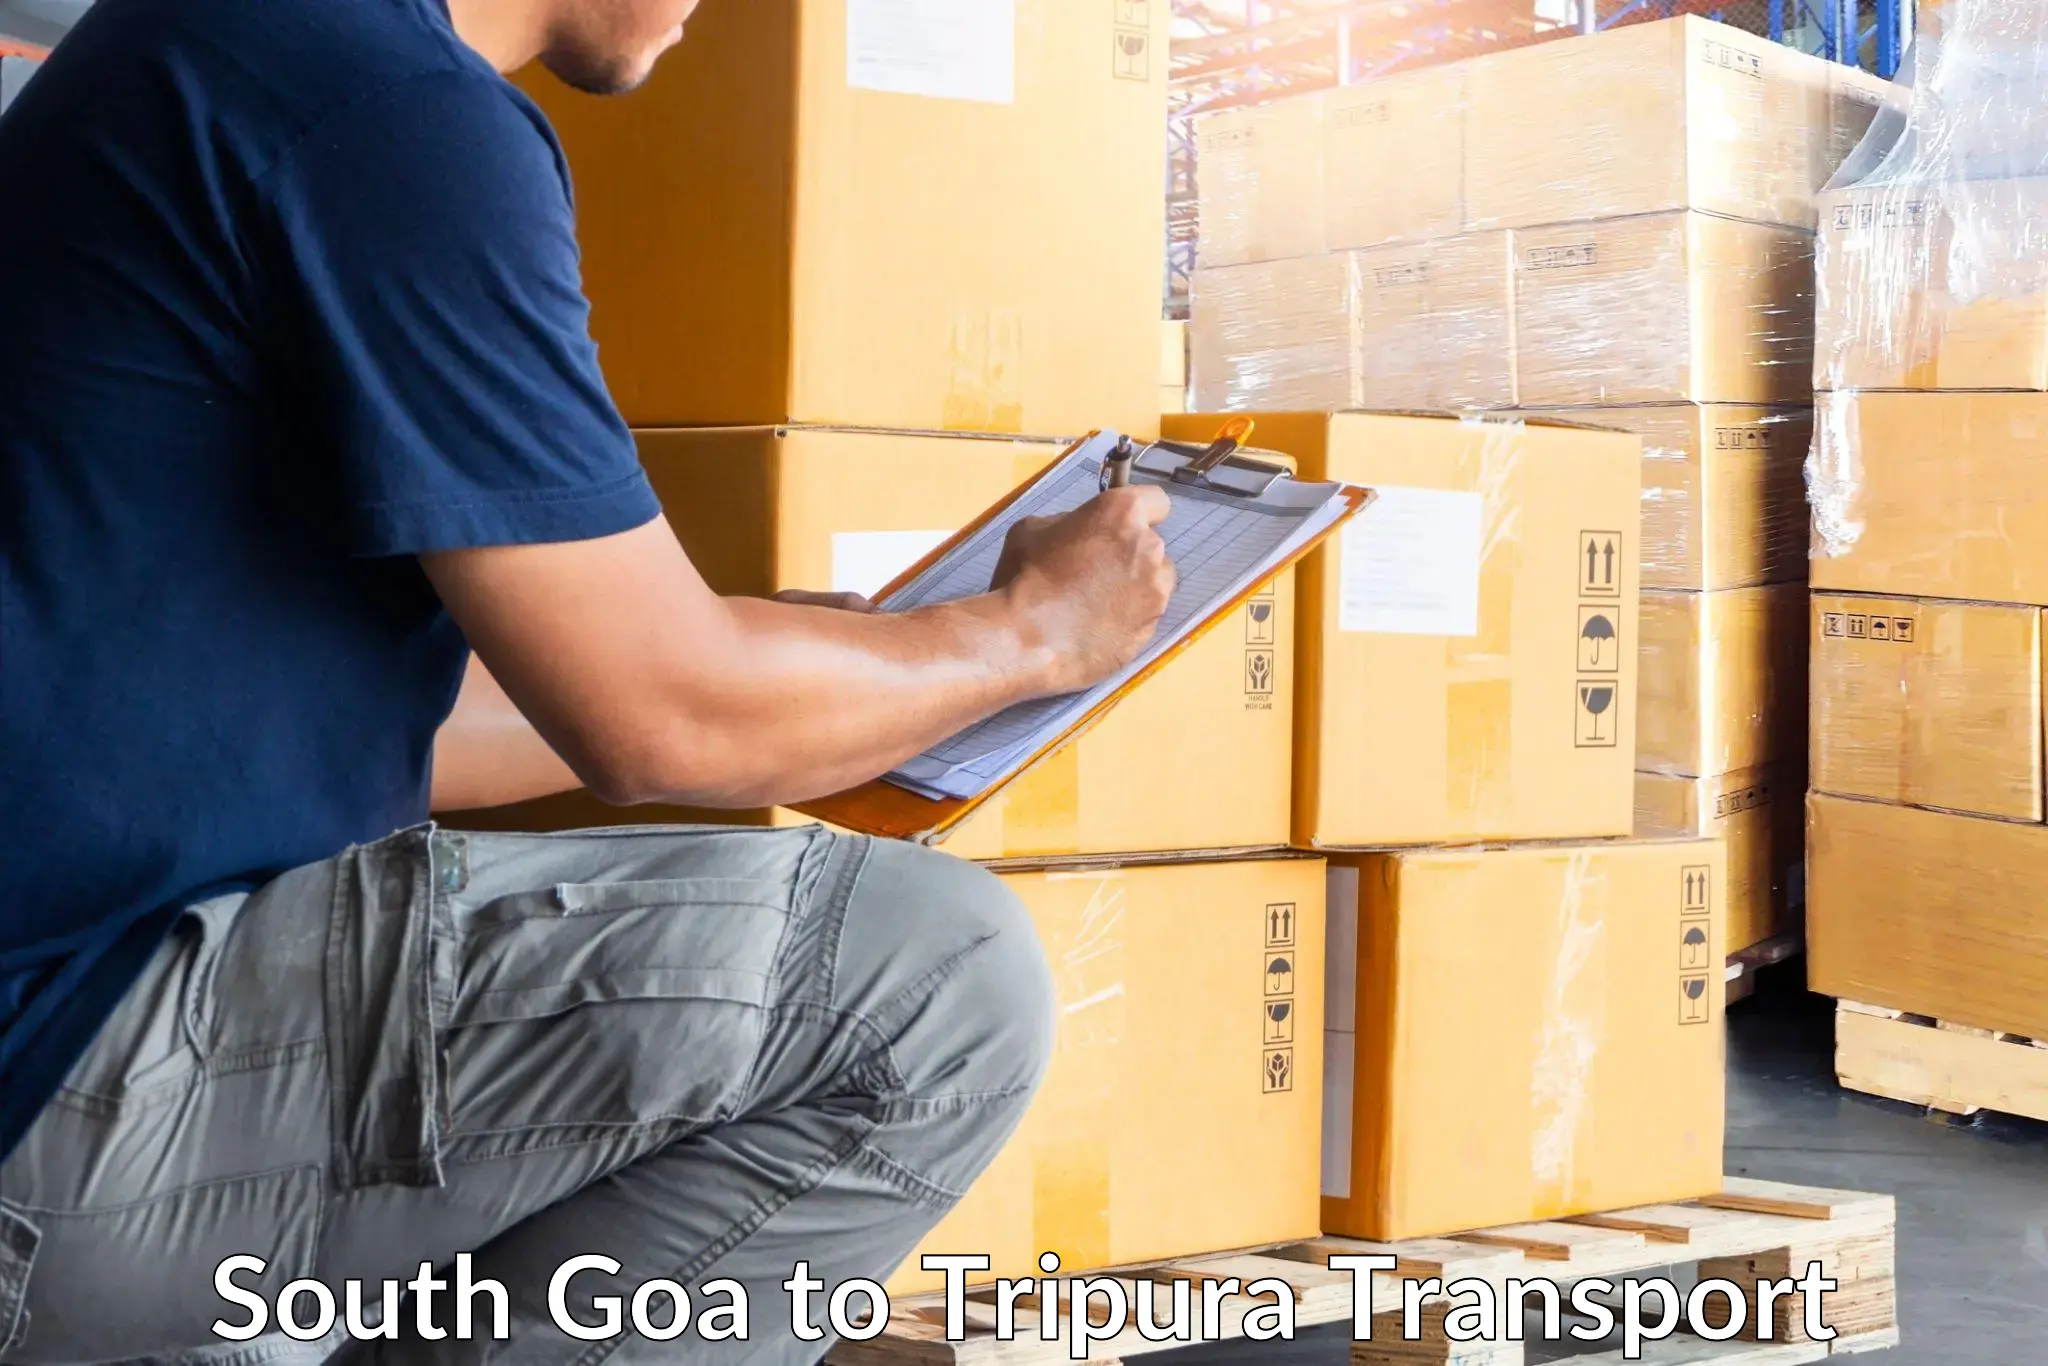 Cargo transportation services South Goa to Kailashahar